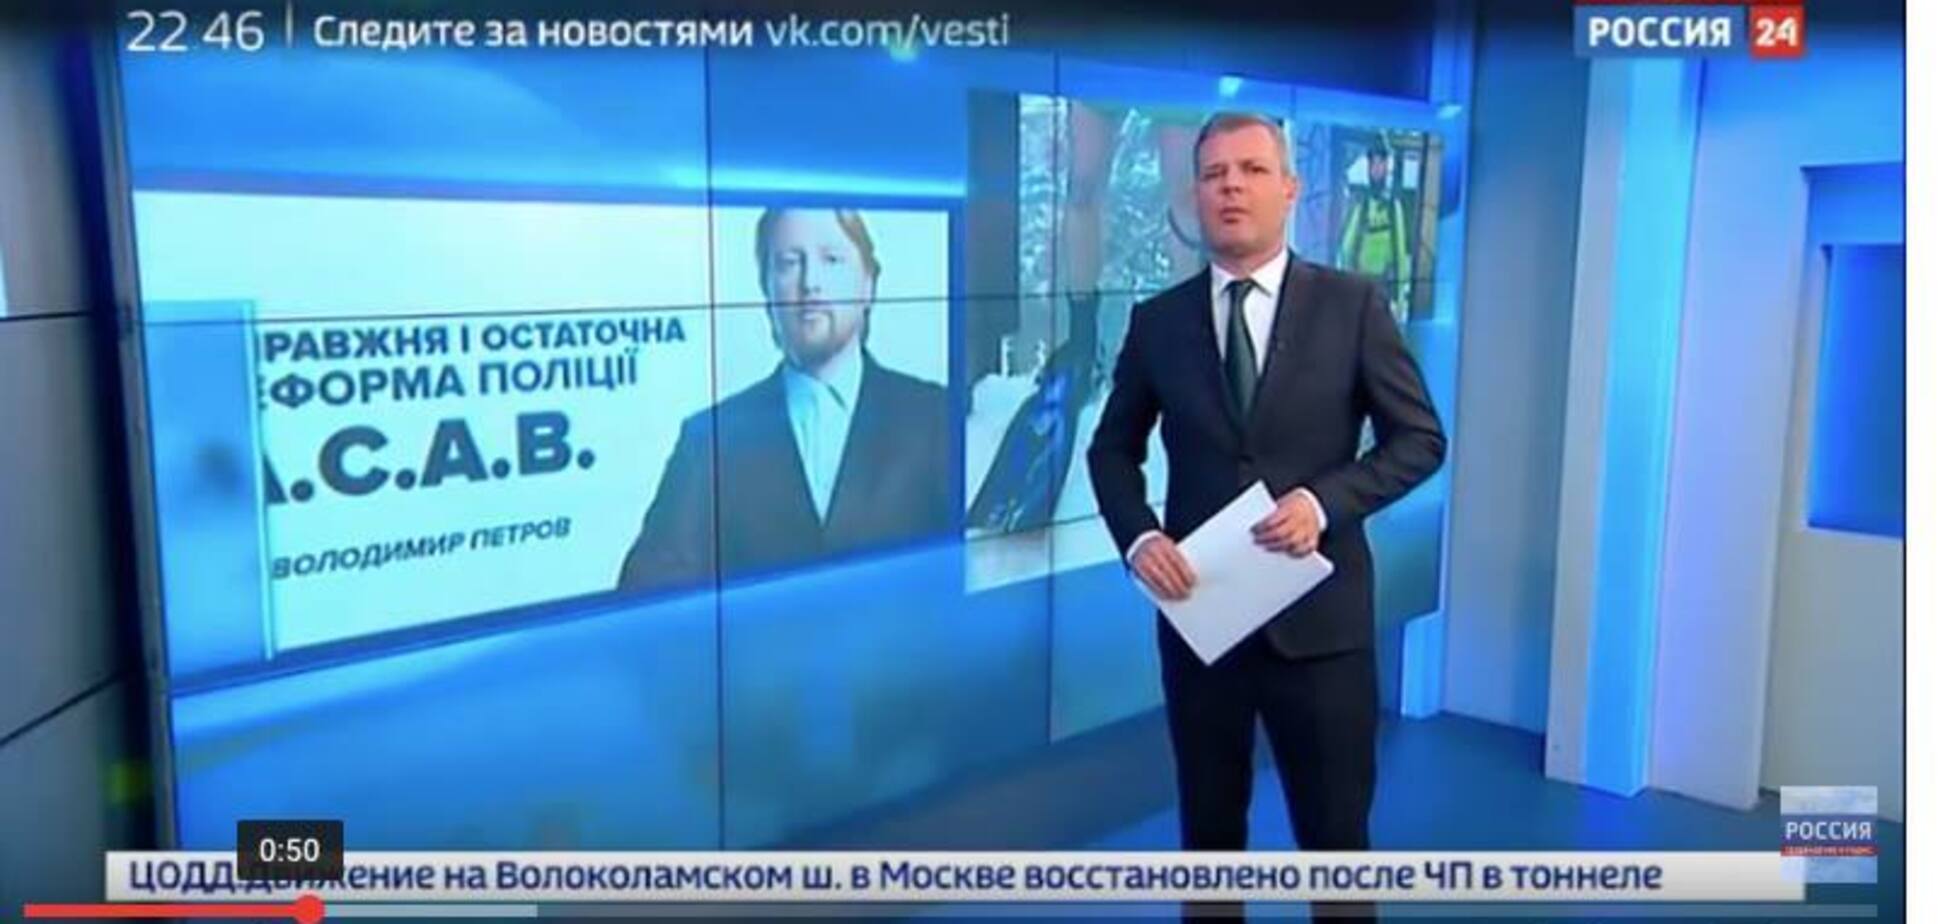 'Мусора' и А.С.А.В. в эфире: российский канал в прайм-тайм цитировал украинского политтехнолога